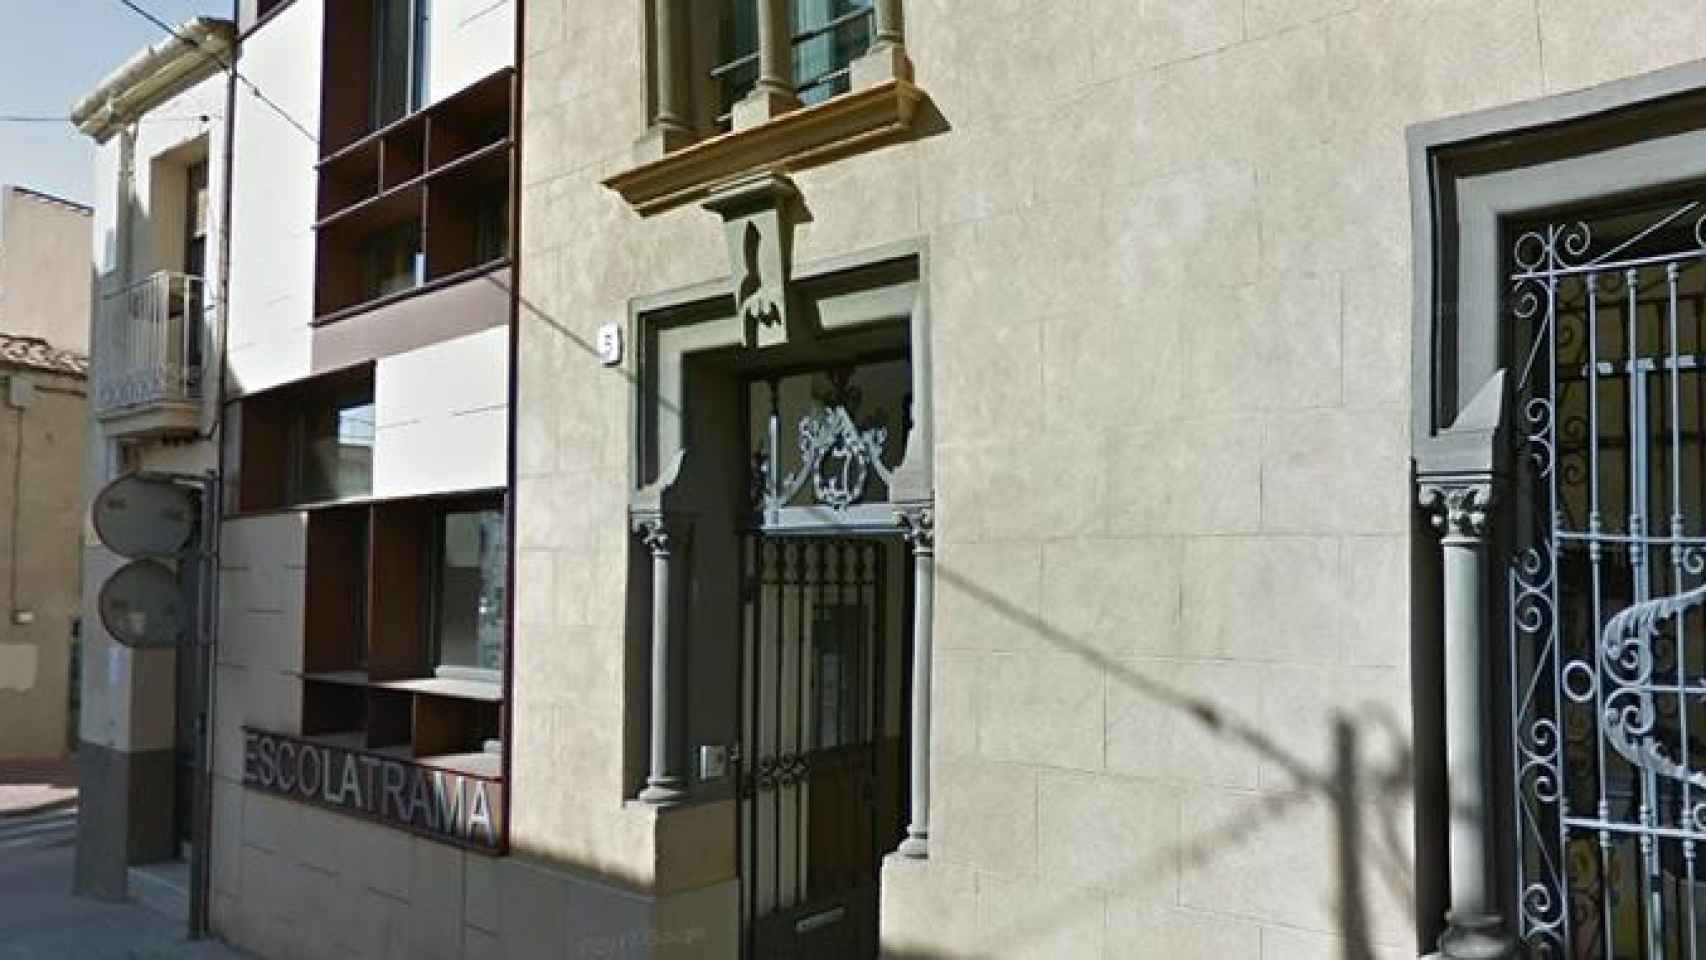 Escuela La Trama, en Sabadell, posible afectada por el caso 3%